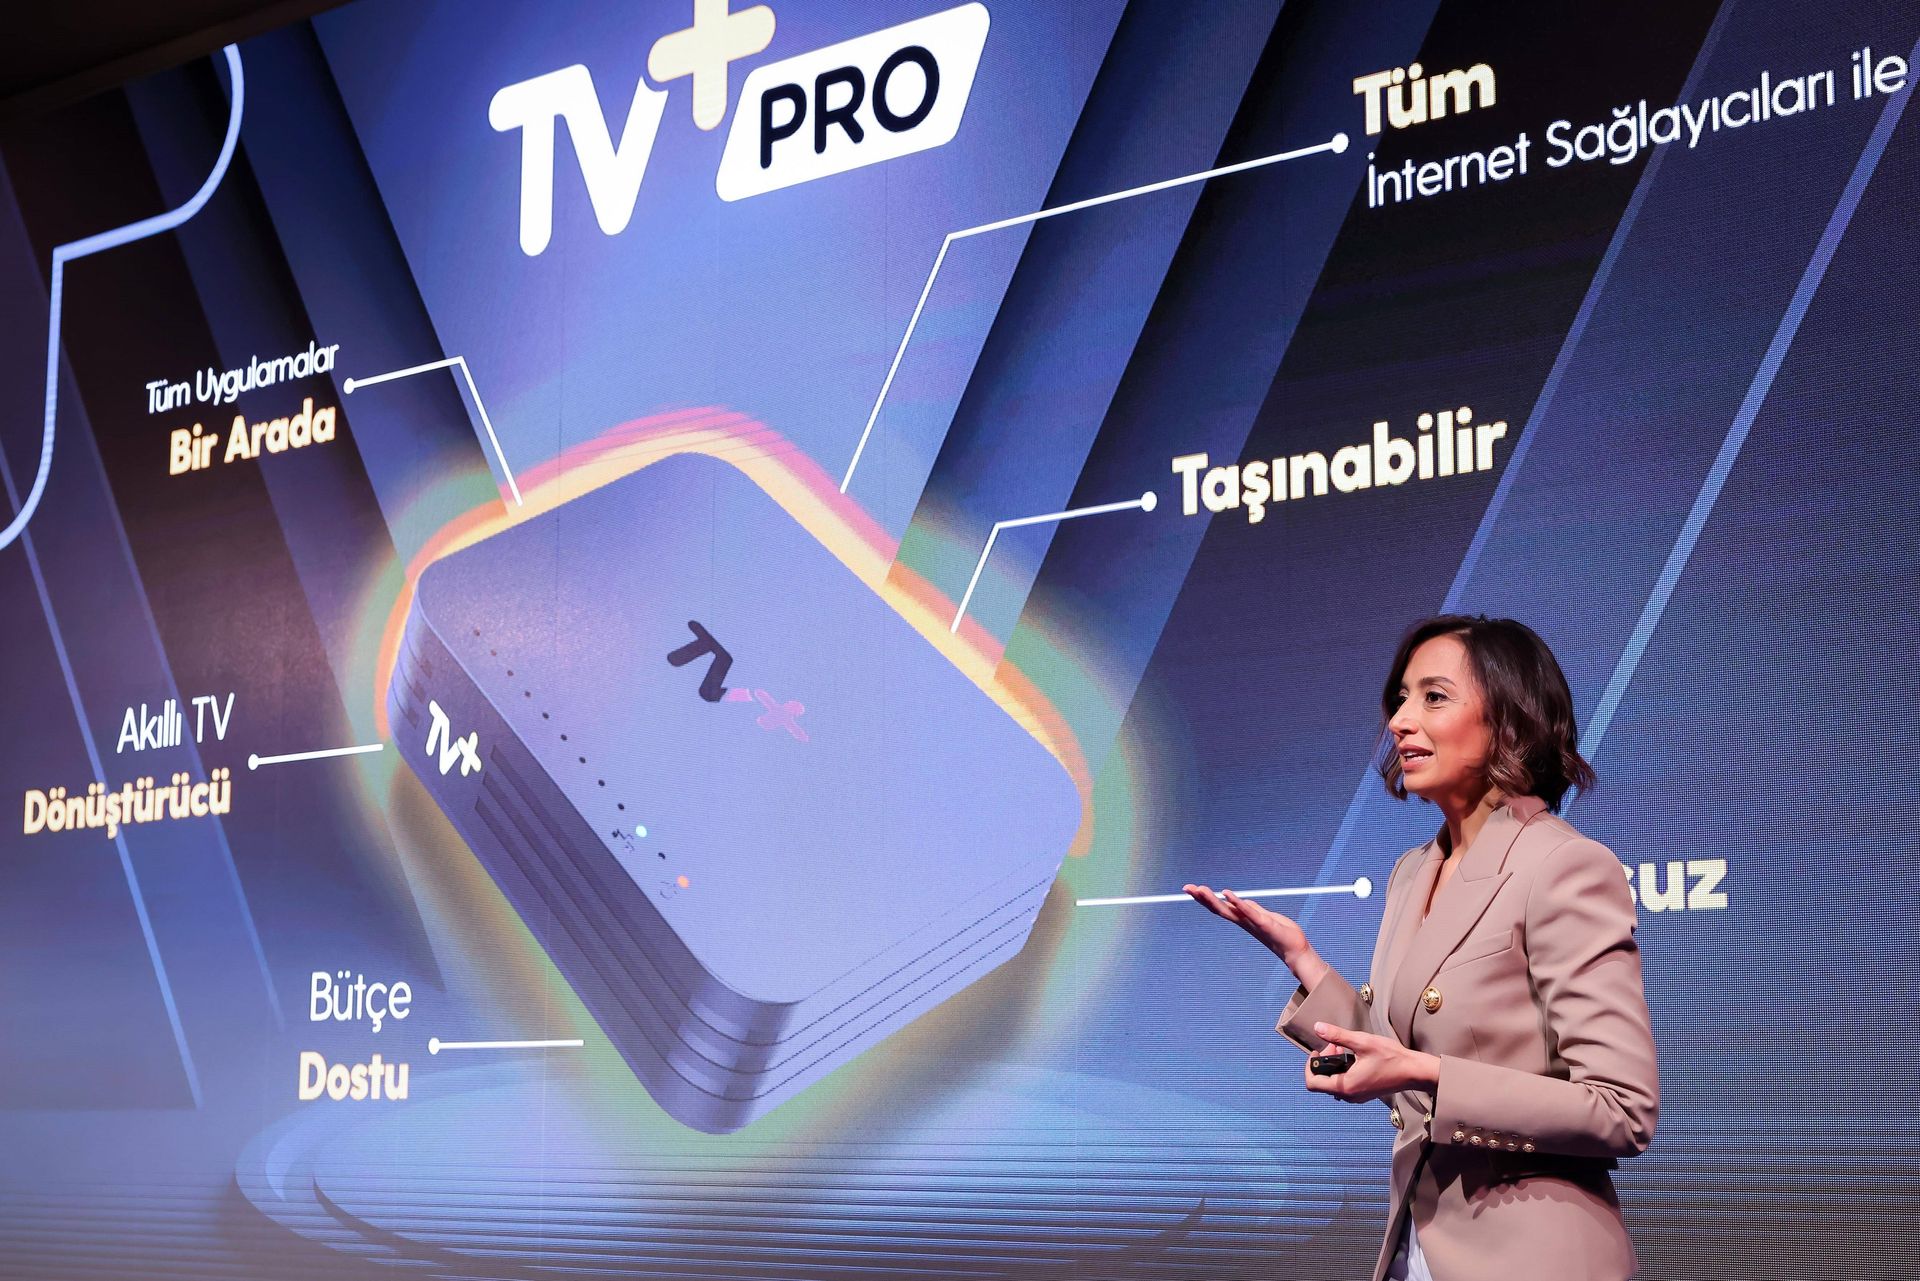 Turkcell TV+'da süper platform çağı başlıyor